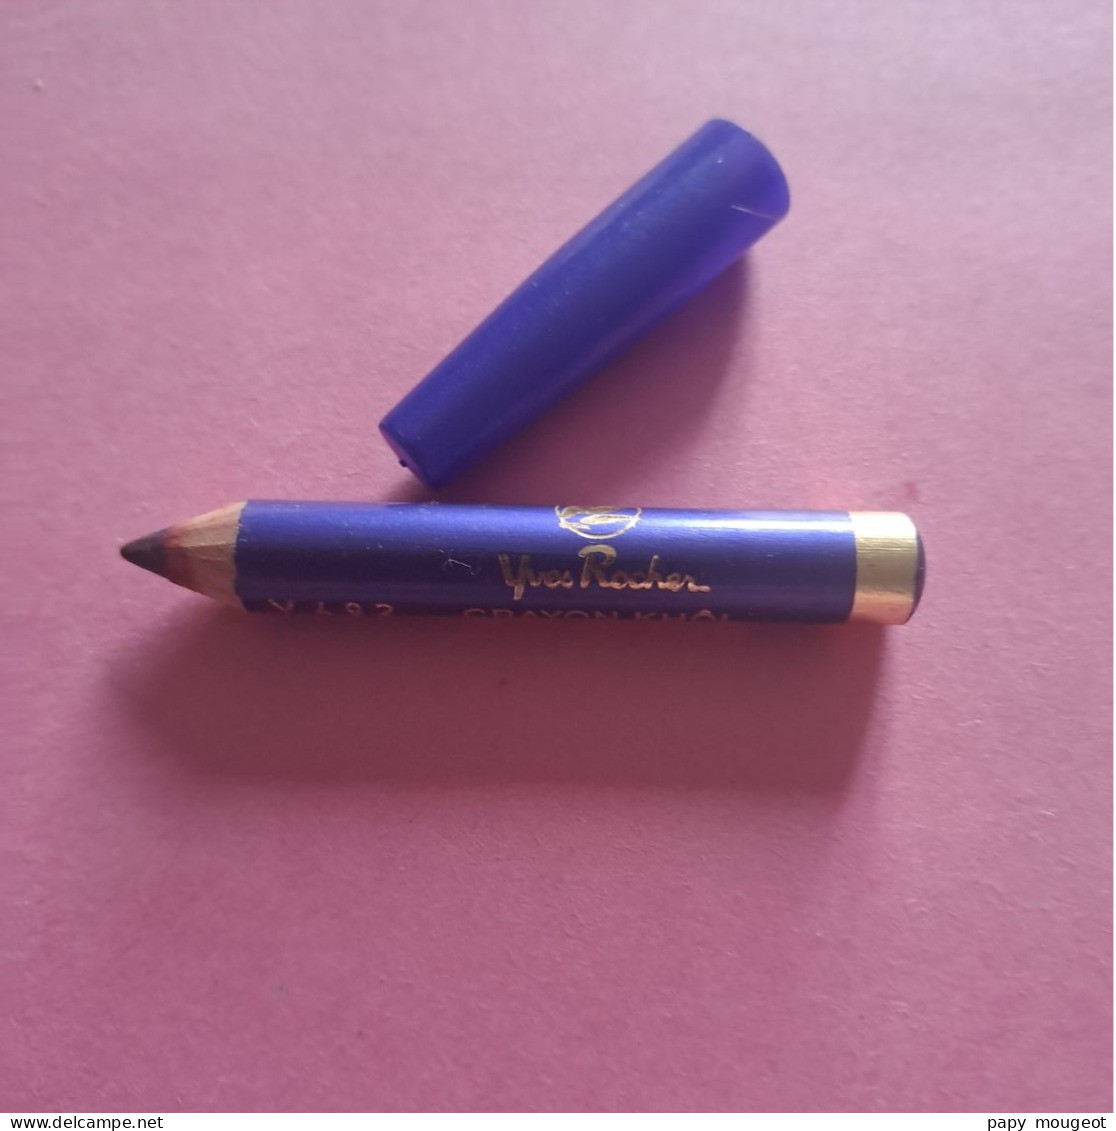 Crayon Khöl Y 482 Violet Des Andes Yves Rocher - Produits De Beauté